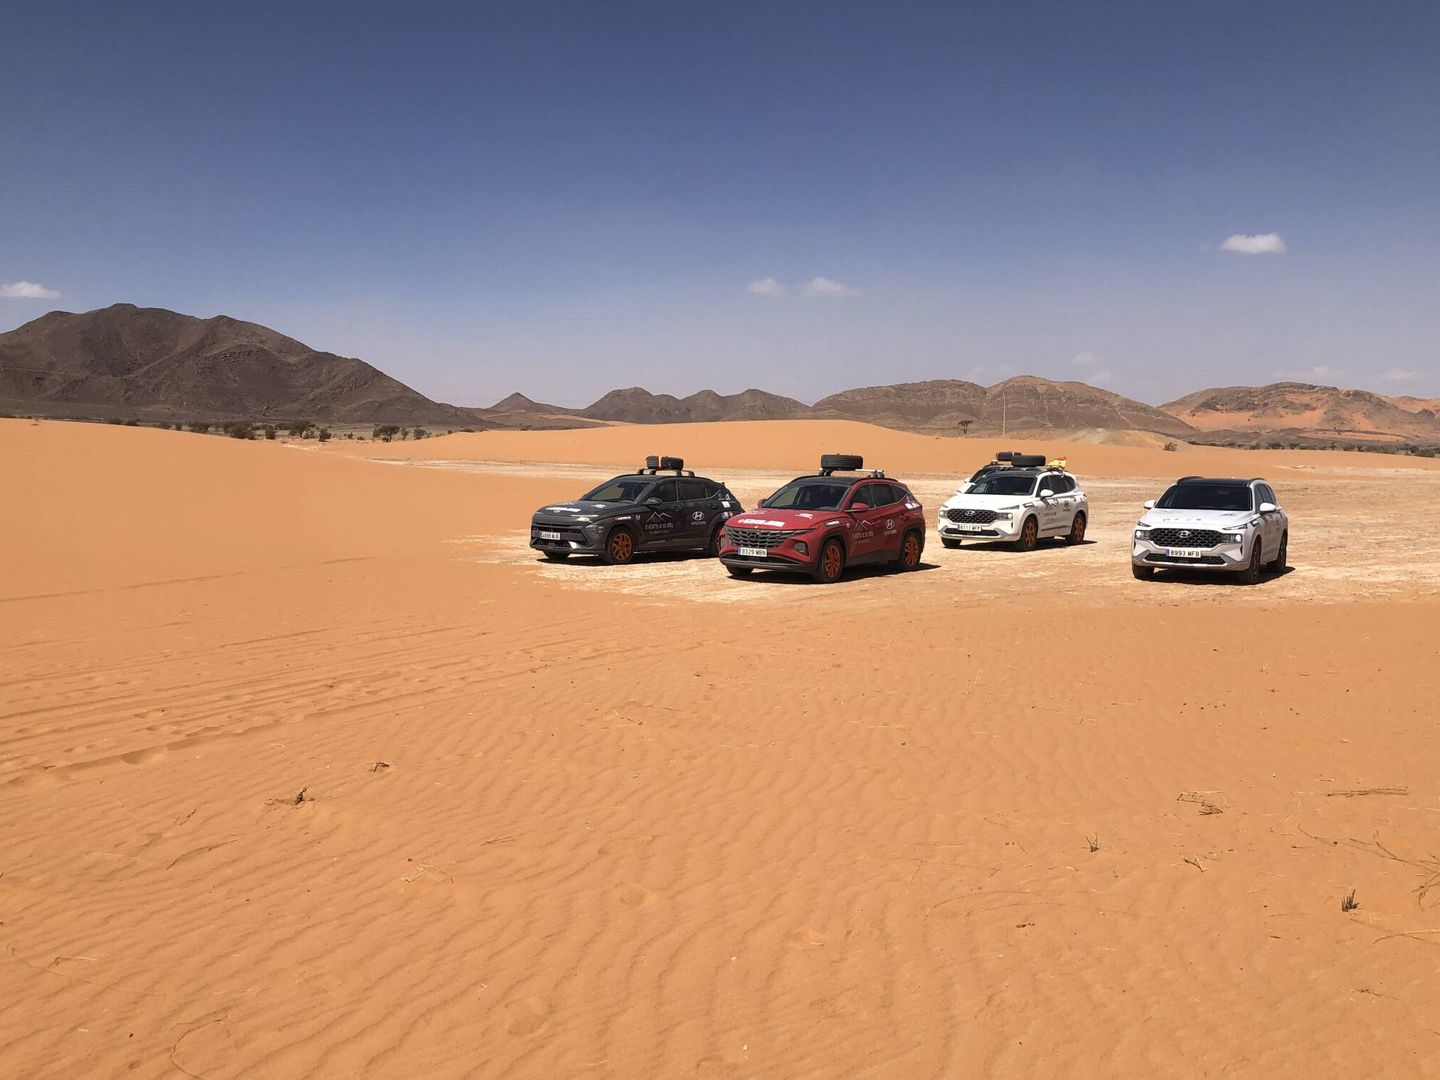 En el sur de Marruecos, buena parte de la ruta discurre por pistas y arenales. Viajar en grupo es obligado.